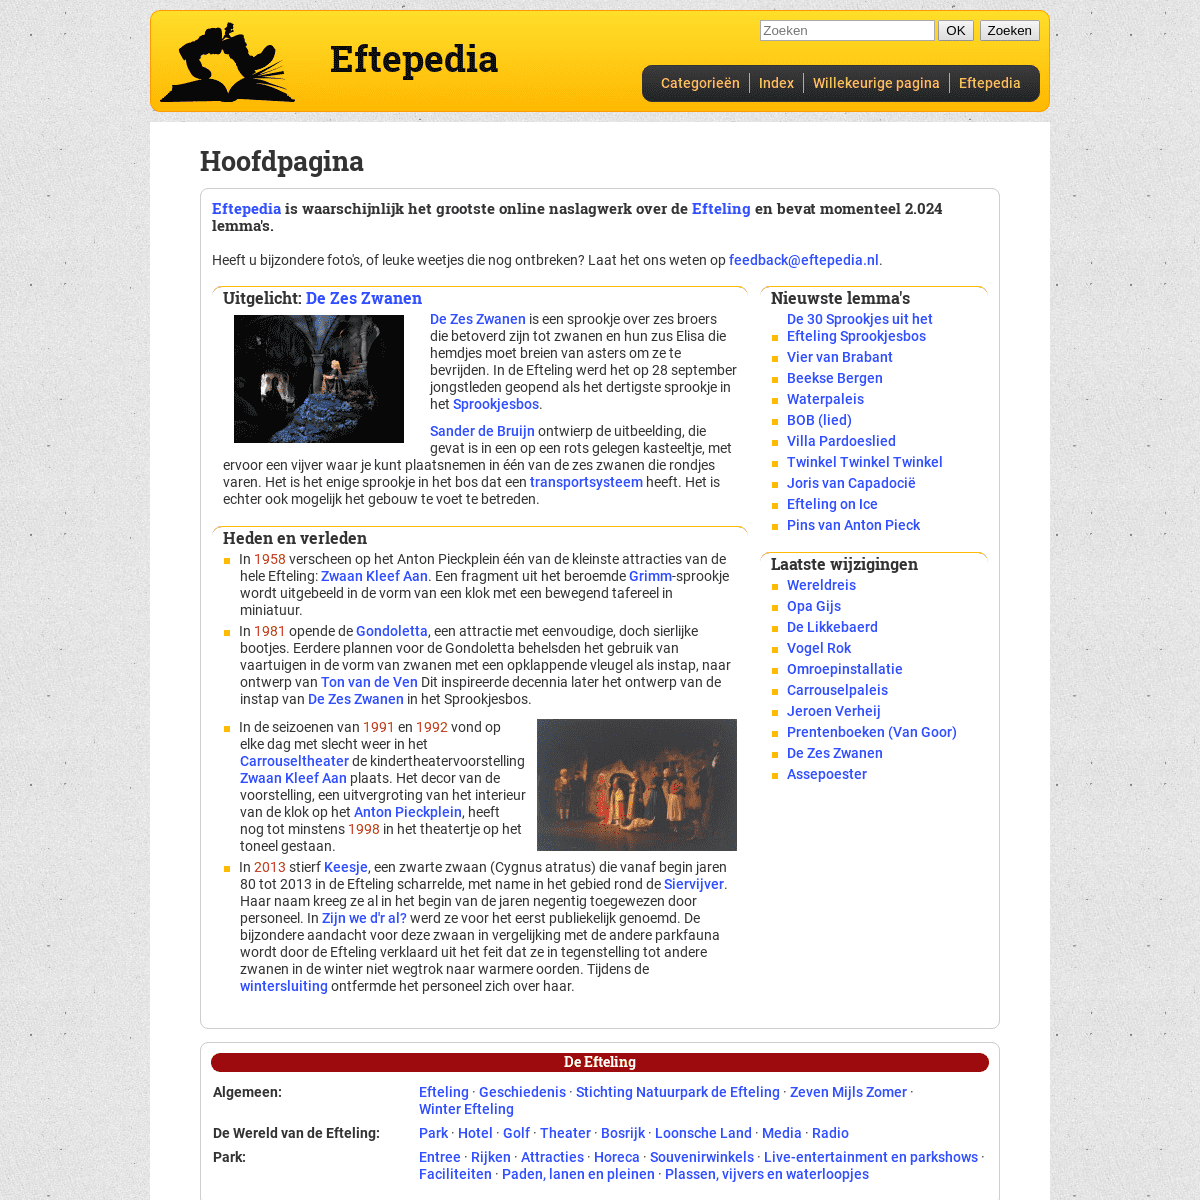 A complete backup of eftepedia.nl